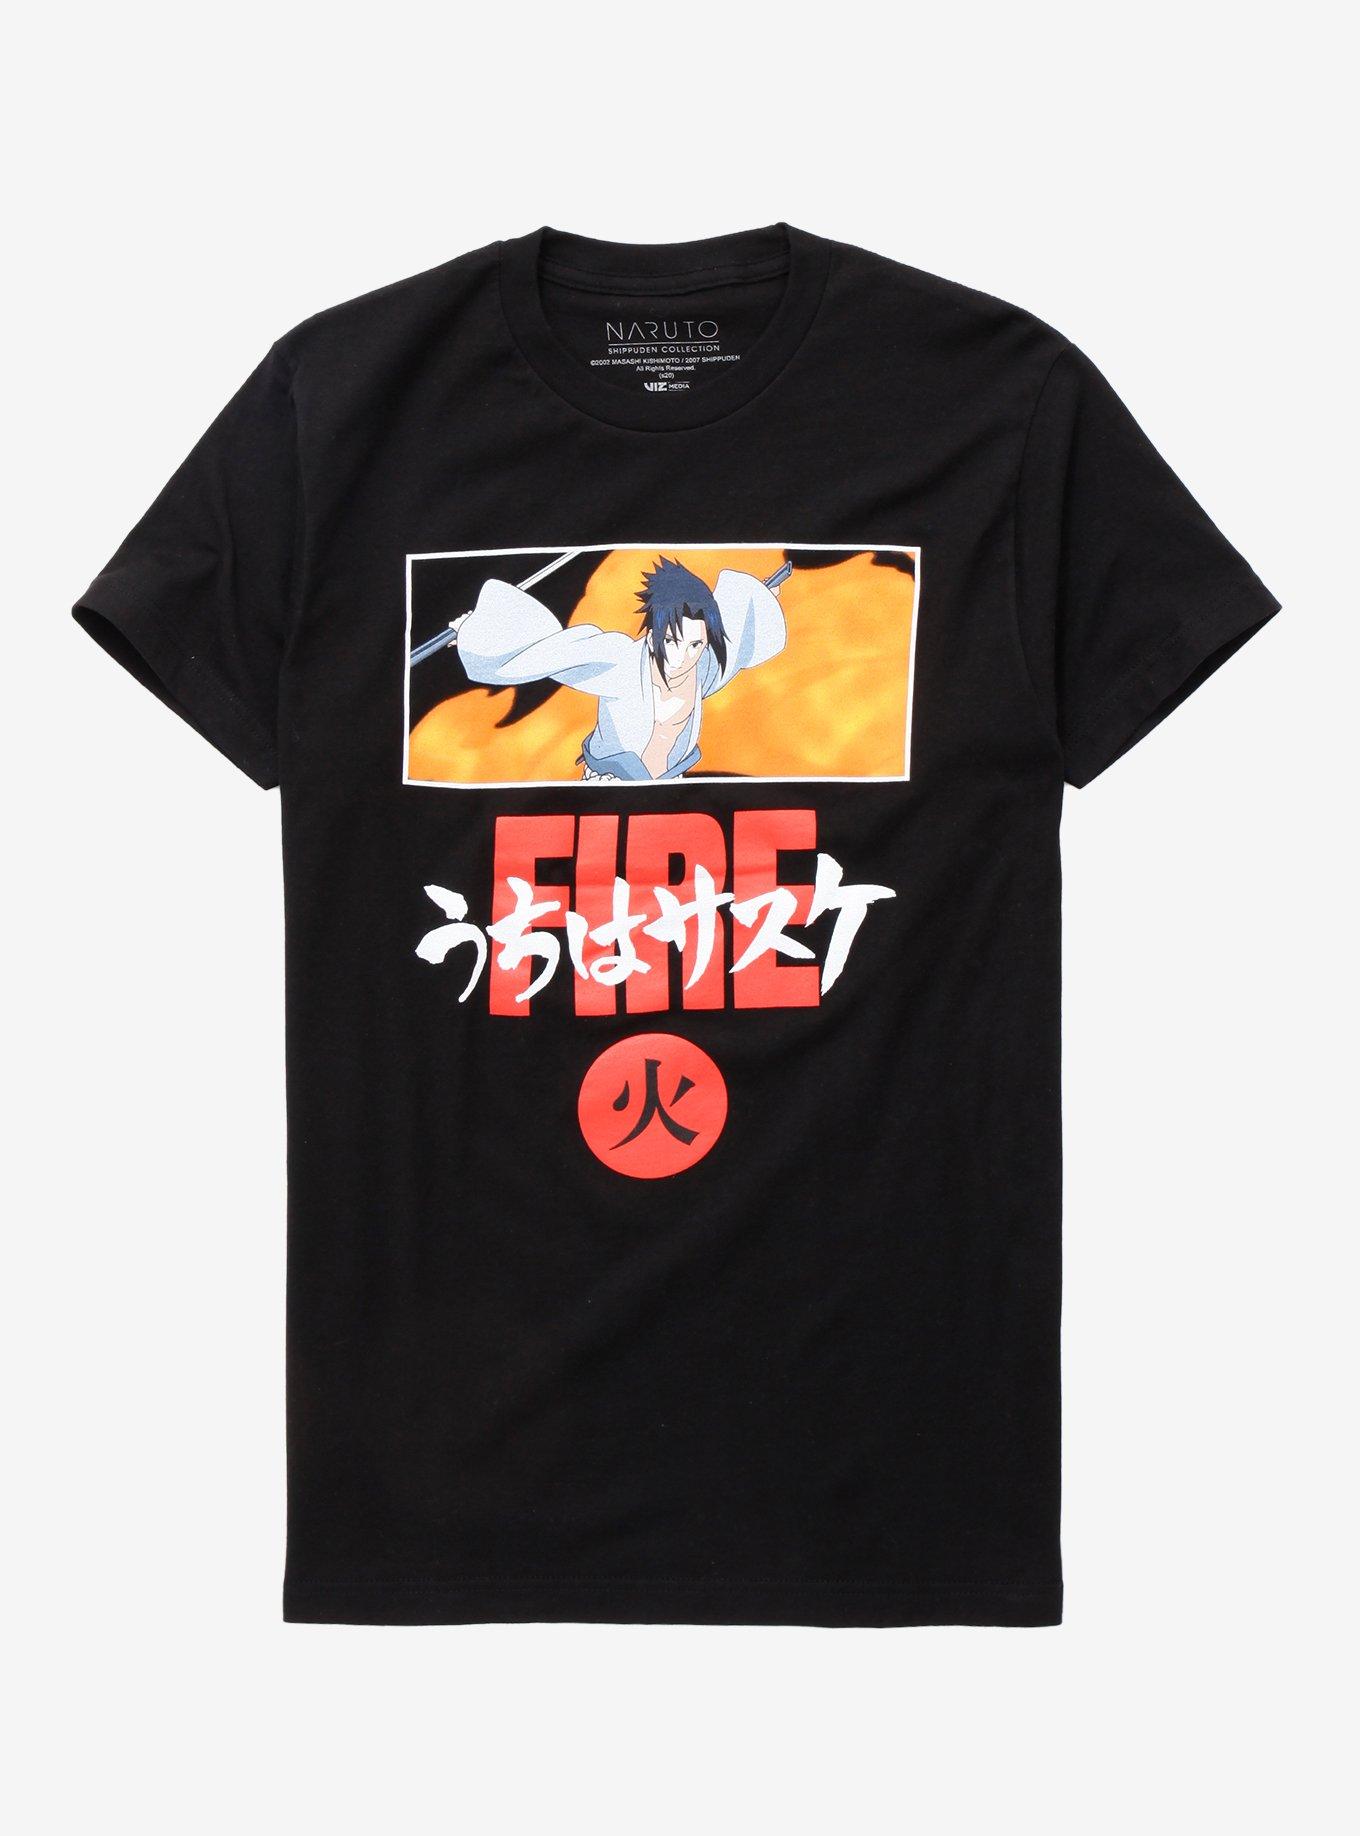 Naruto Shippuden Sasuke Fire T-Shirt, BLACK, hi-res